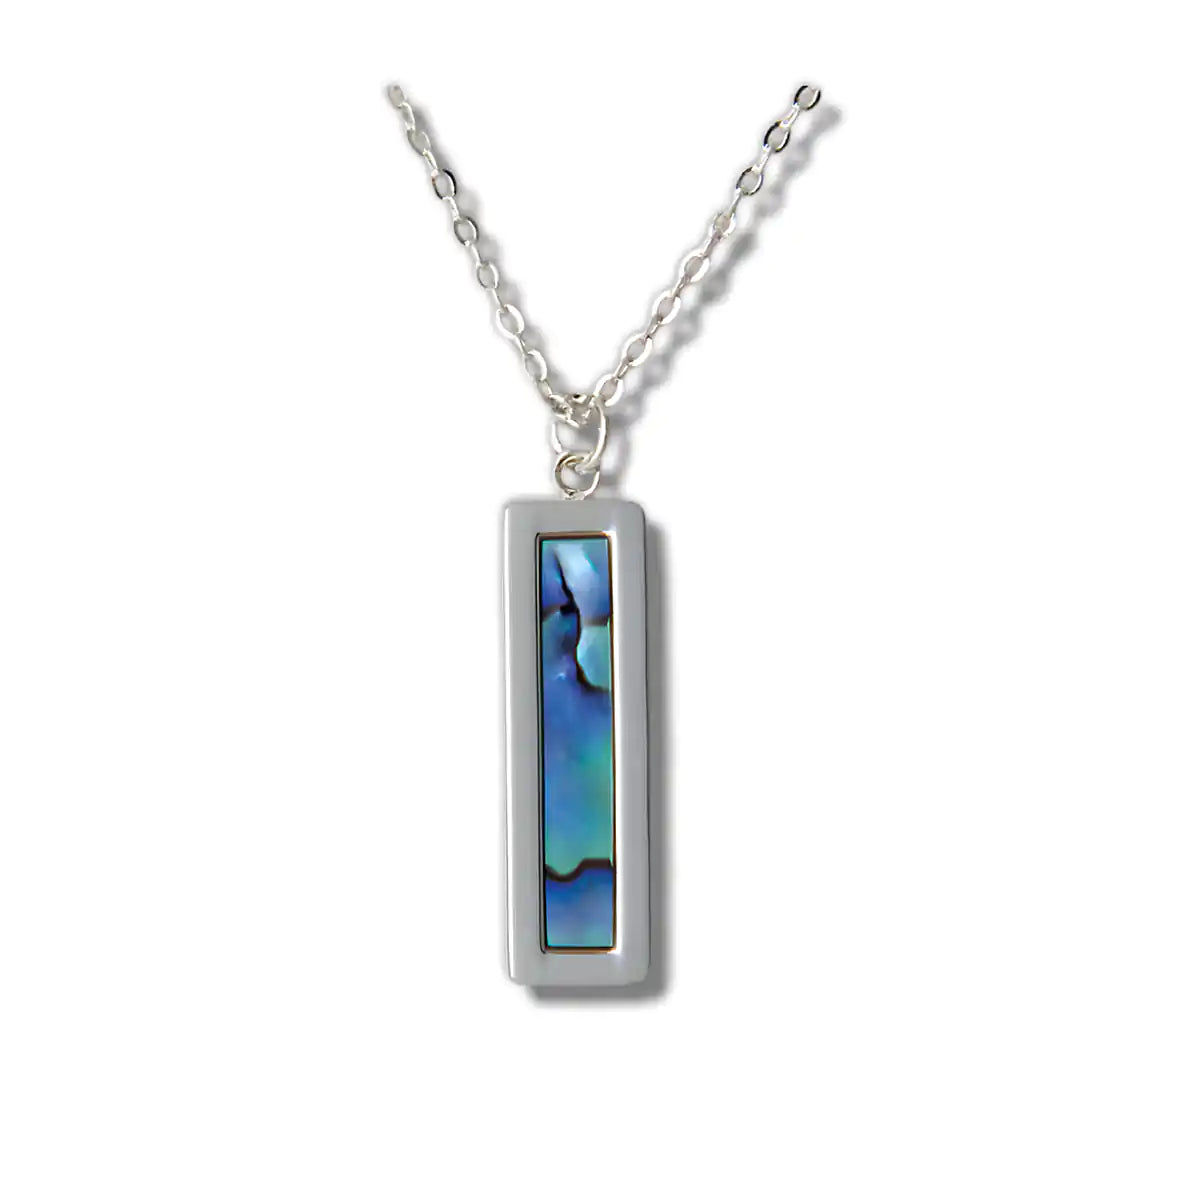 Glacier pearle serenity necklace